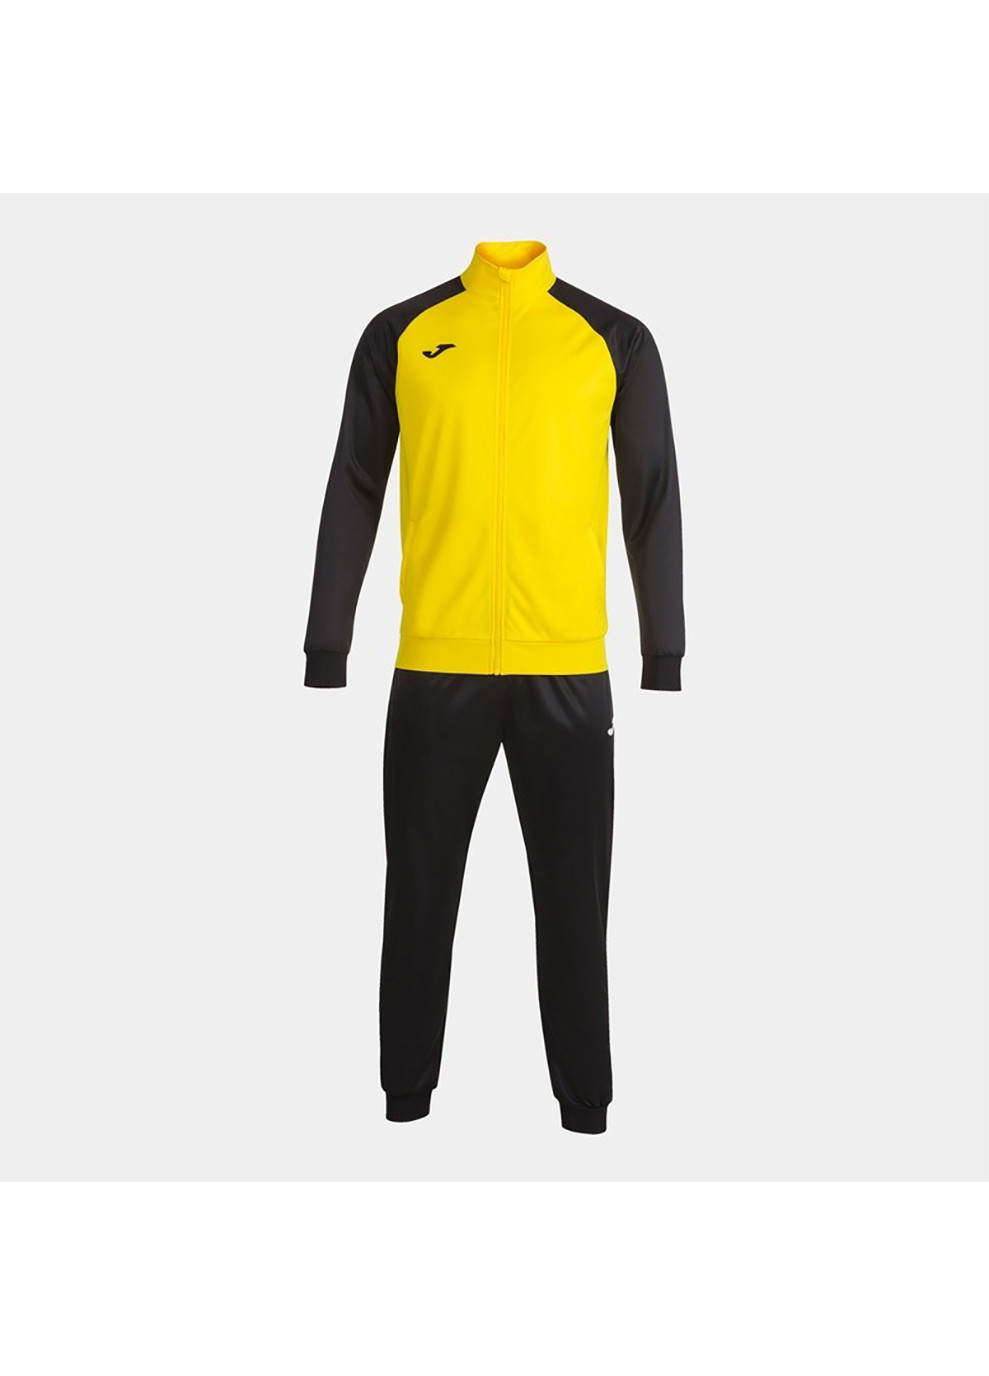 Мужской спортивный костюм ACADEMY IV TRACKSUIT желтый, черный Joma (260634187)